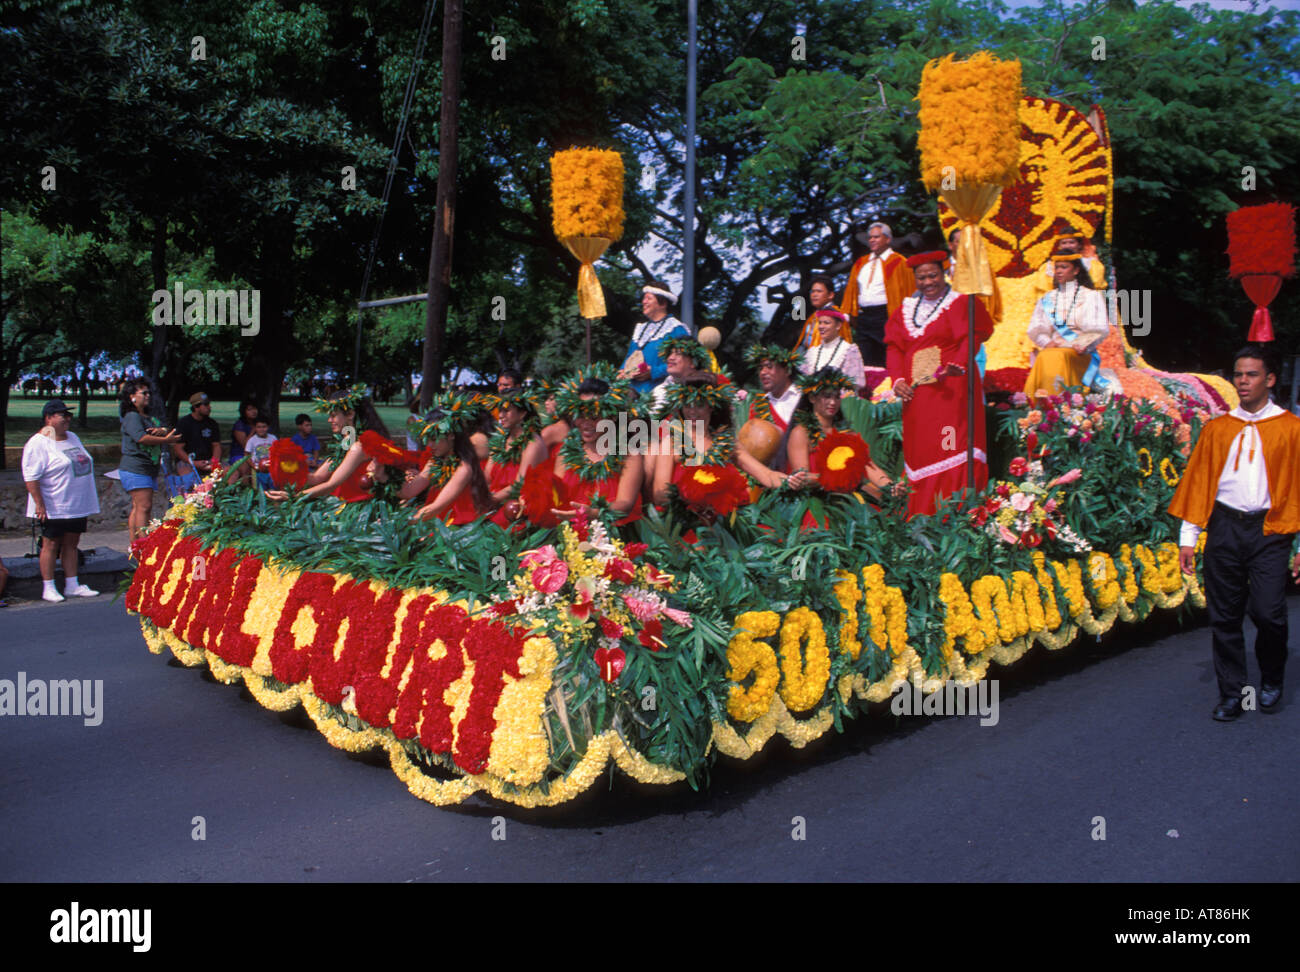 Royal Court float, Aloha Festivals Parade, Honolulu Stock Photo